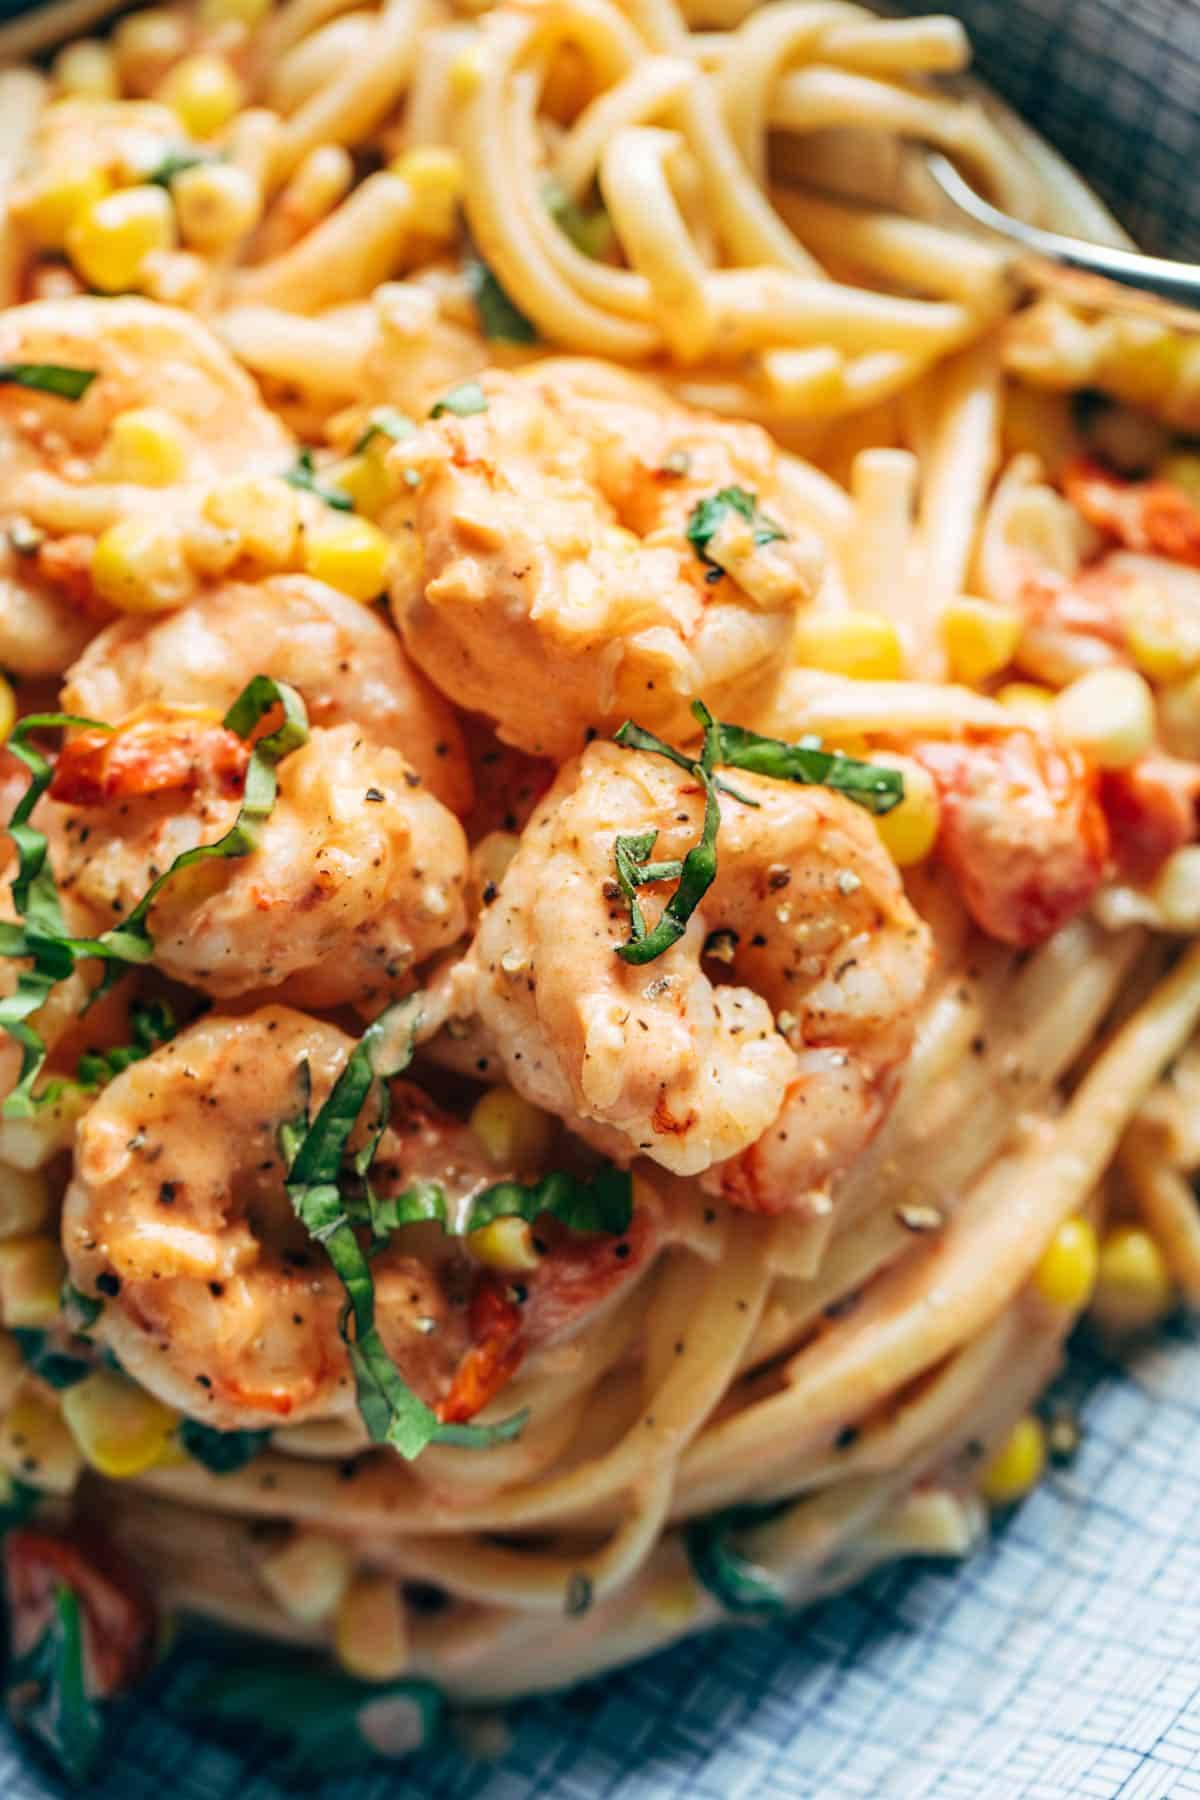 Creamy shrimp pasta close-up.